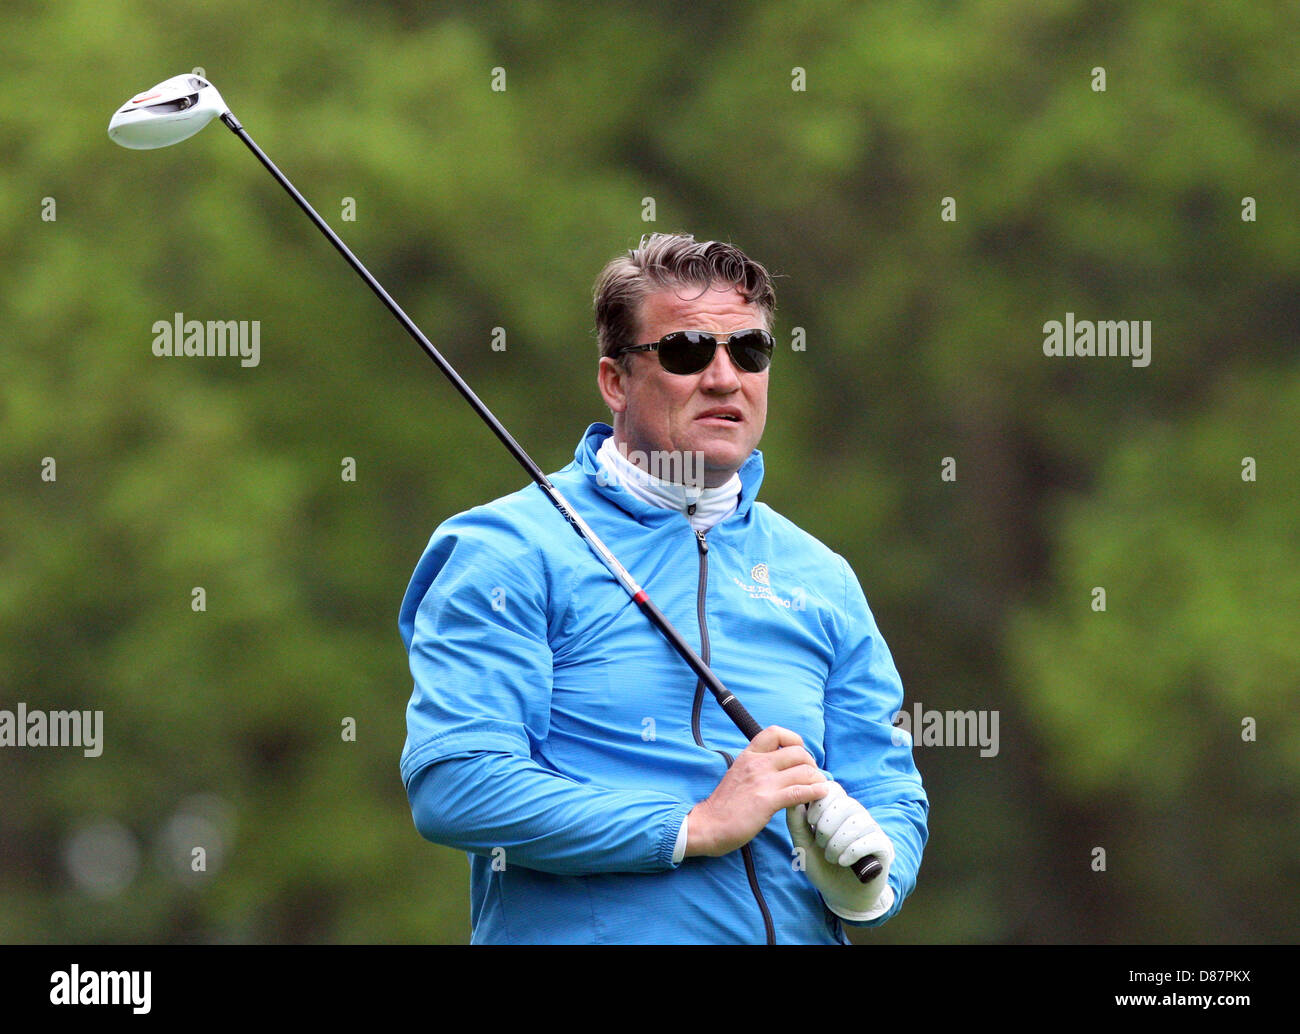 21.05.2013 Wentworth, Inghilterra. Jarmo Sandelin durante la pratica davanti alla BMW PGA Championships. Foto Stock